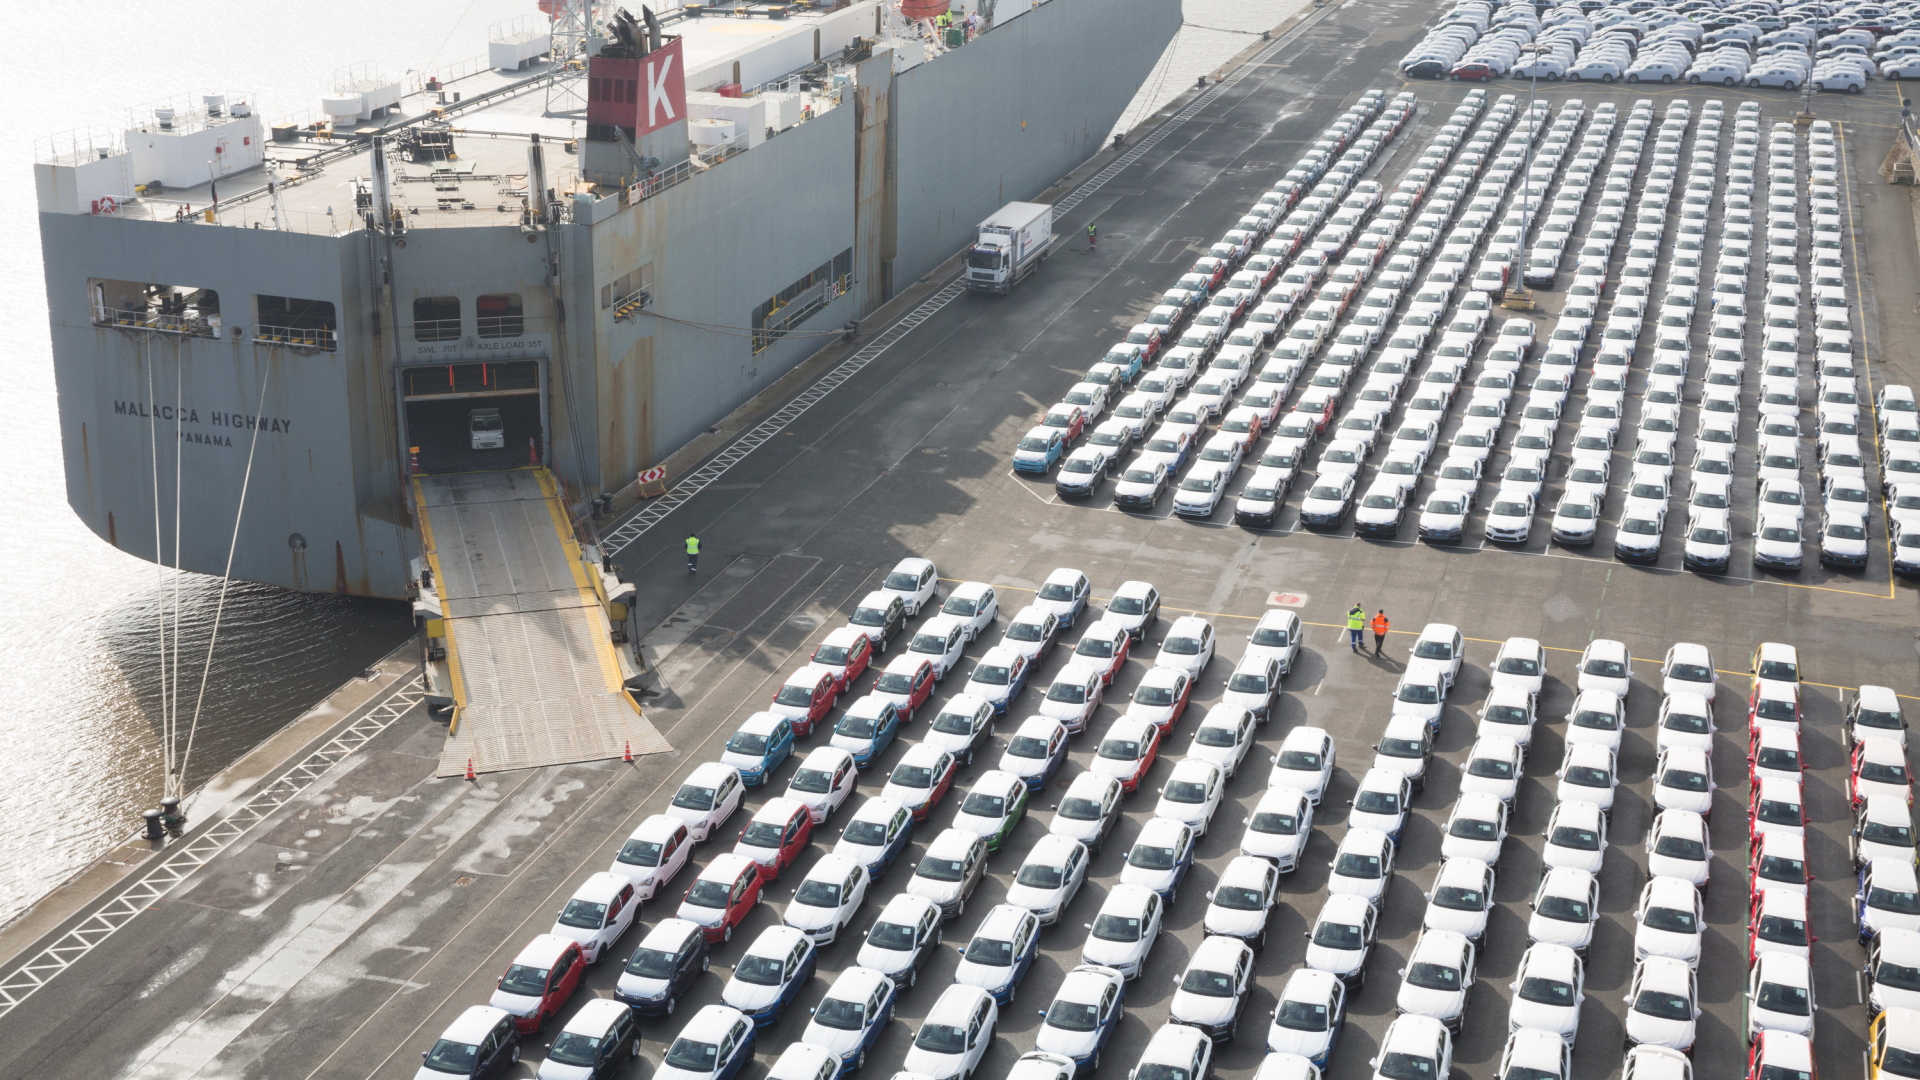 Fahrzeuge des Volkswagen-Konzerns stehen im Hafen von Emden zur Verschiffung bereit | dpa